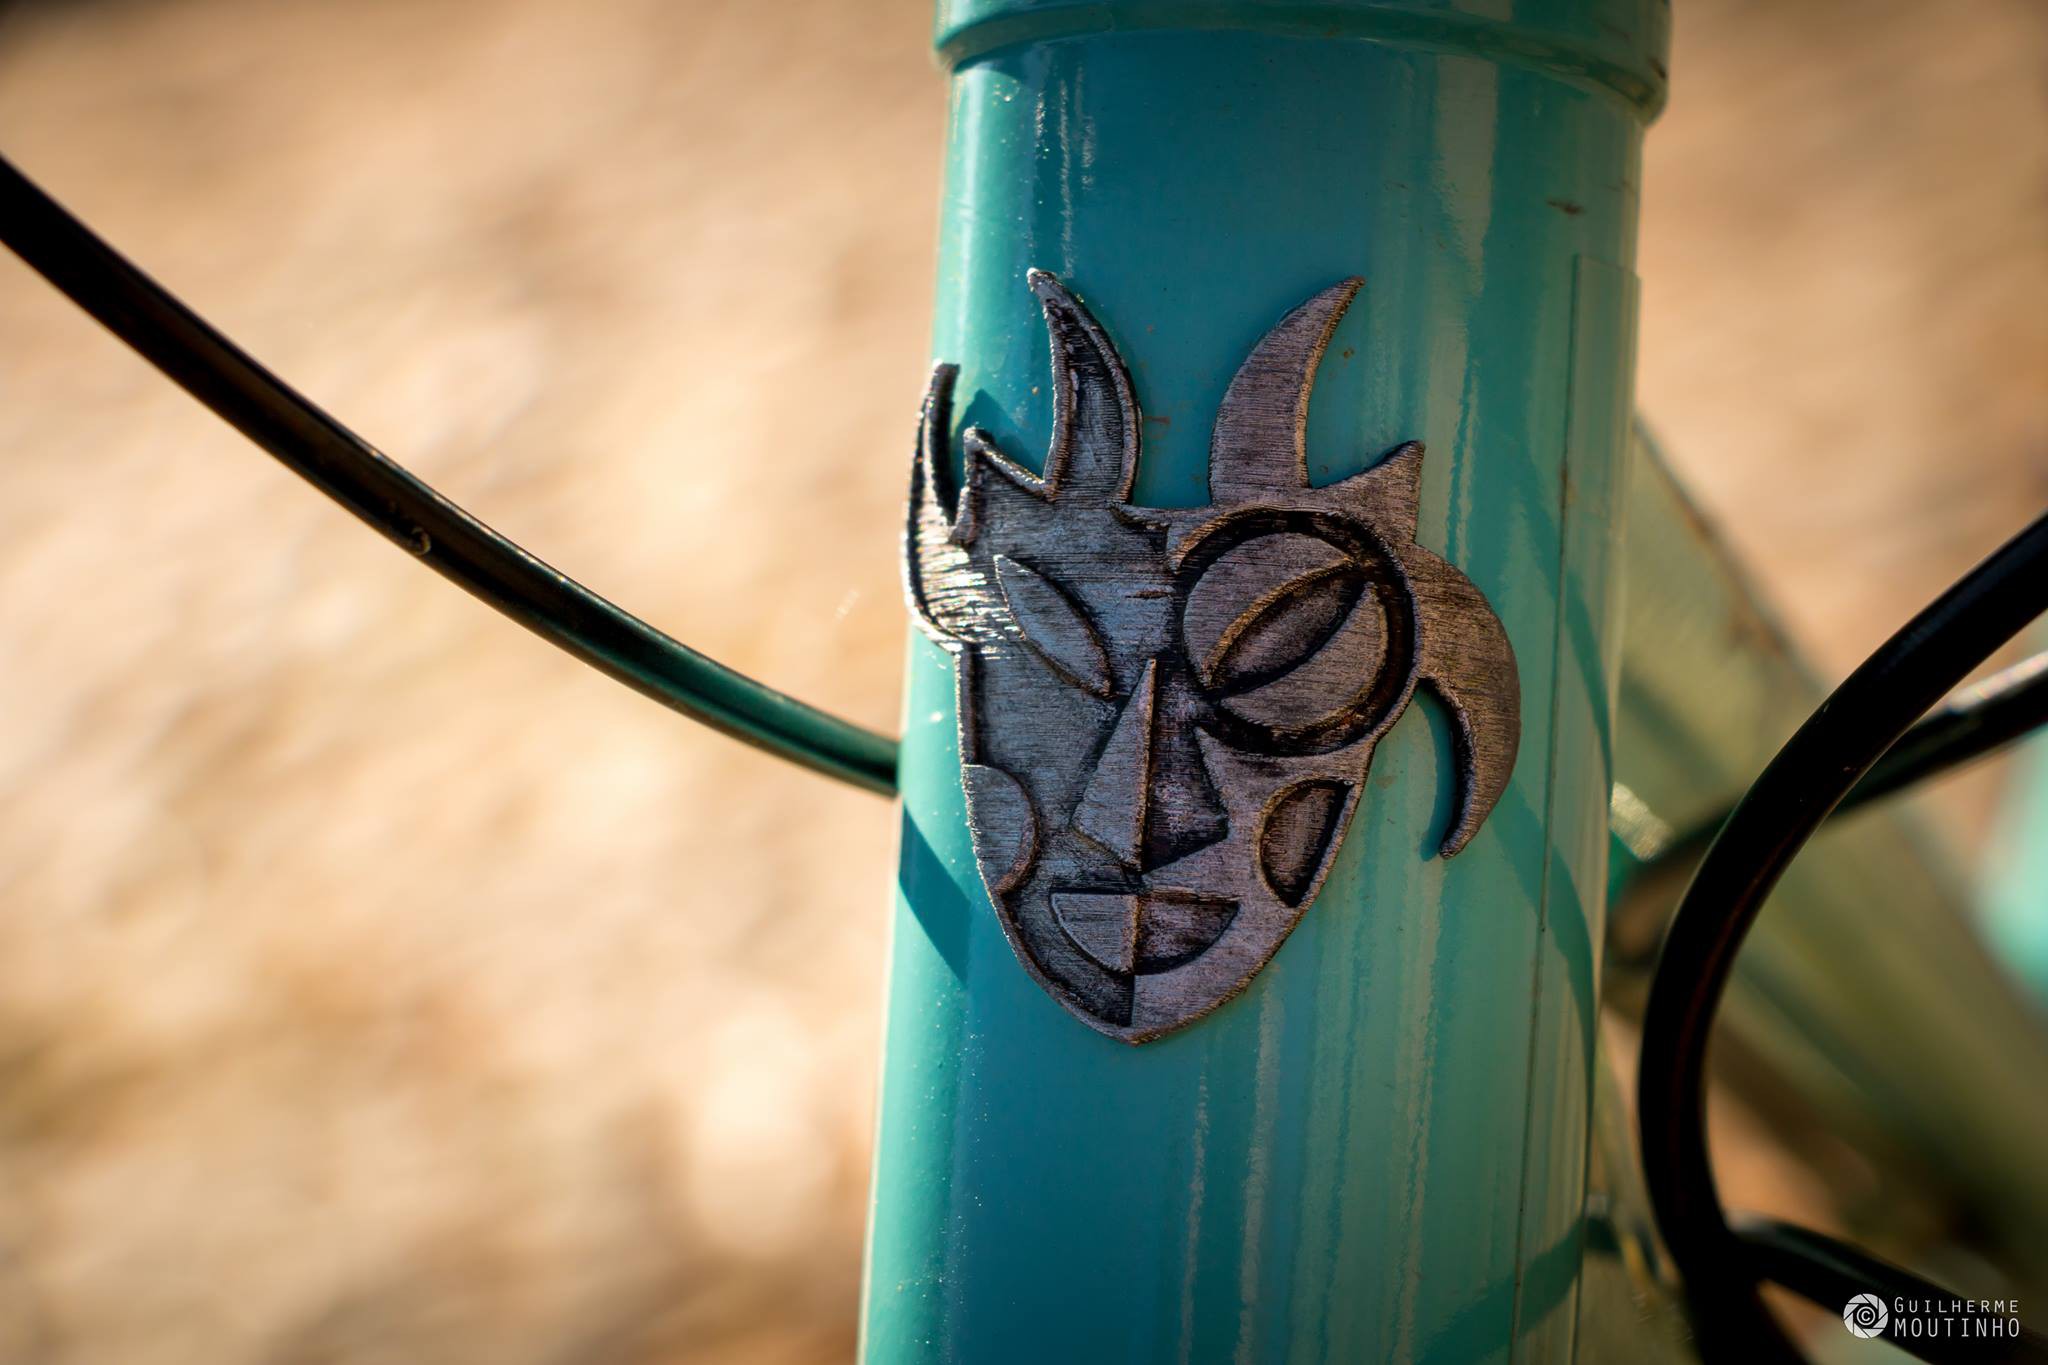 Nordest Cycles, a marca de bicicletas sem manutenção